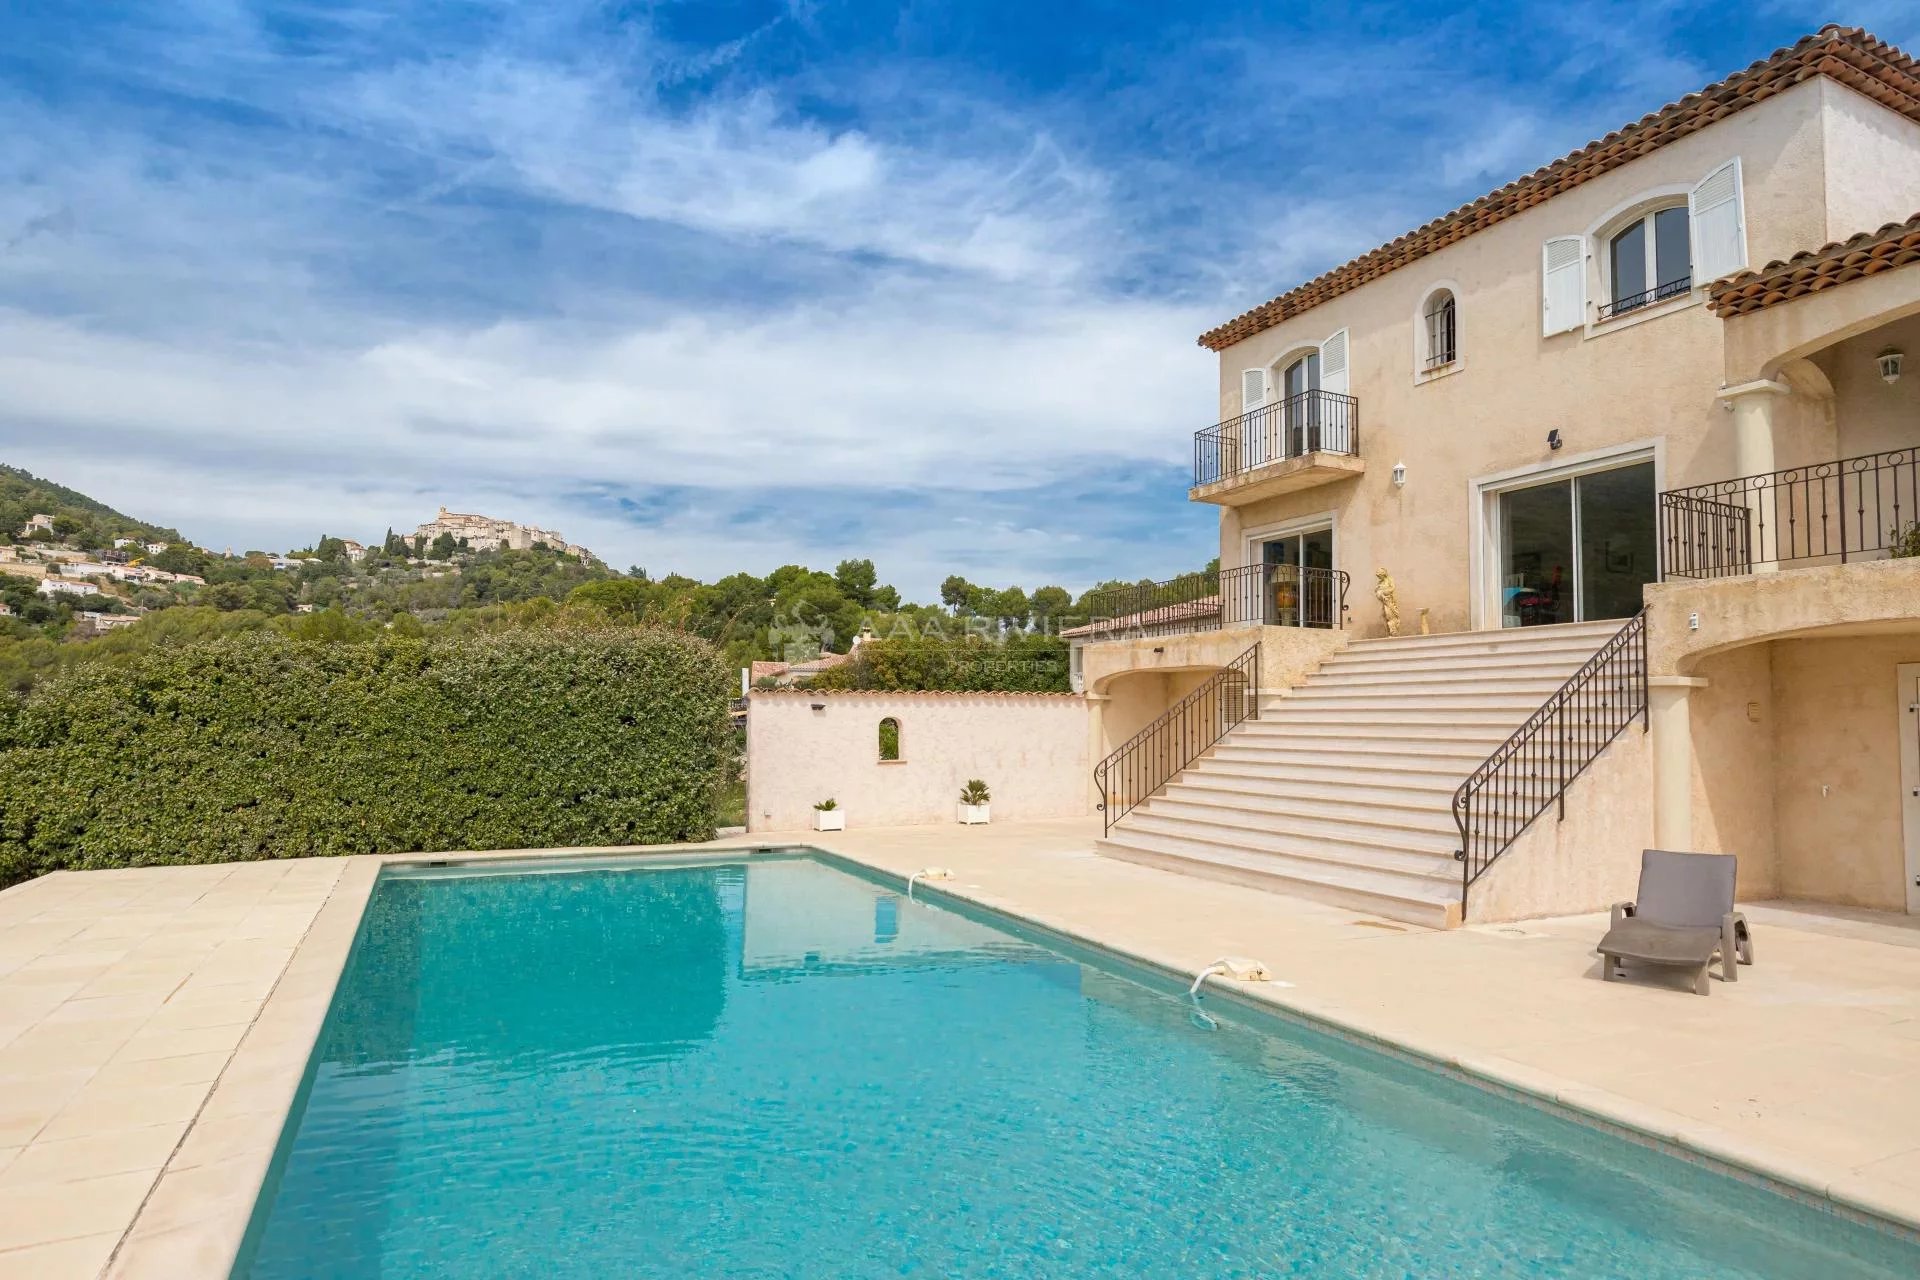 SOUS OFFRE ACCEPTEE -Carros - Villa familiale 5 chambres au calme avec vue panoramique, piscine et studio indépendant